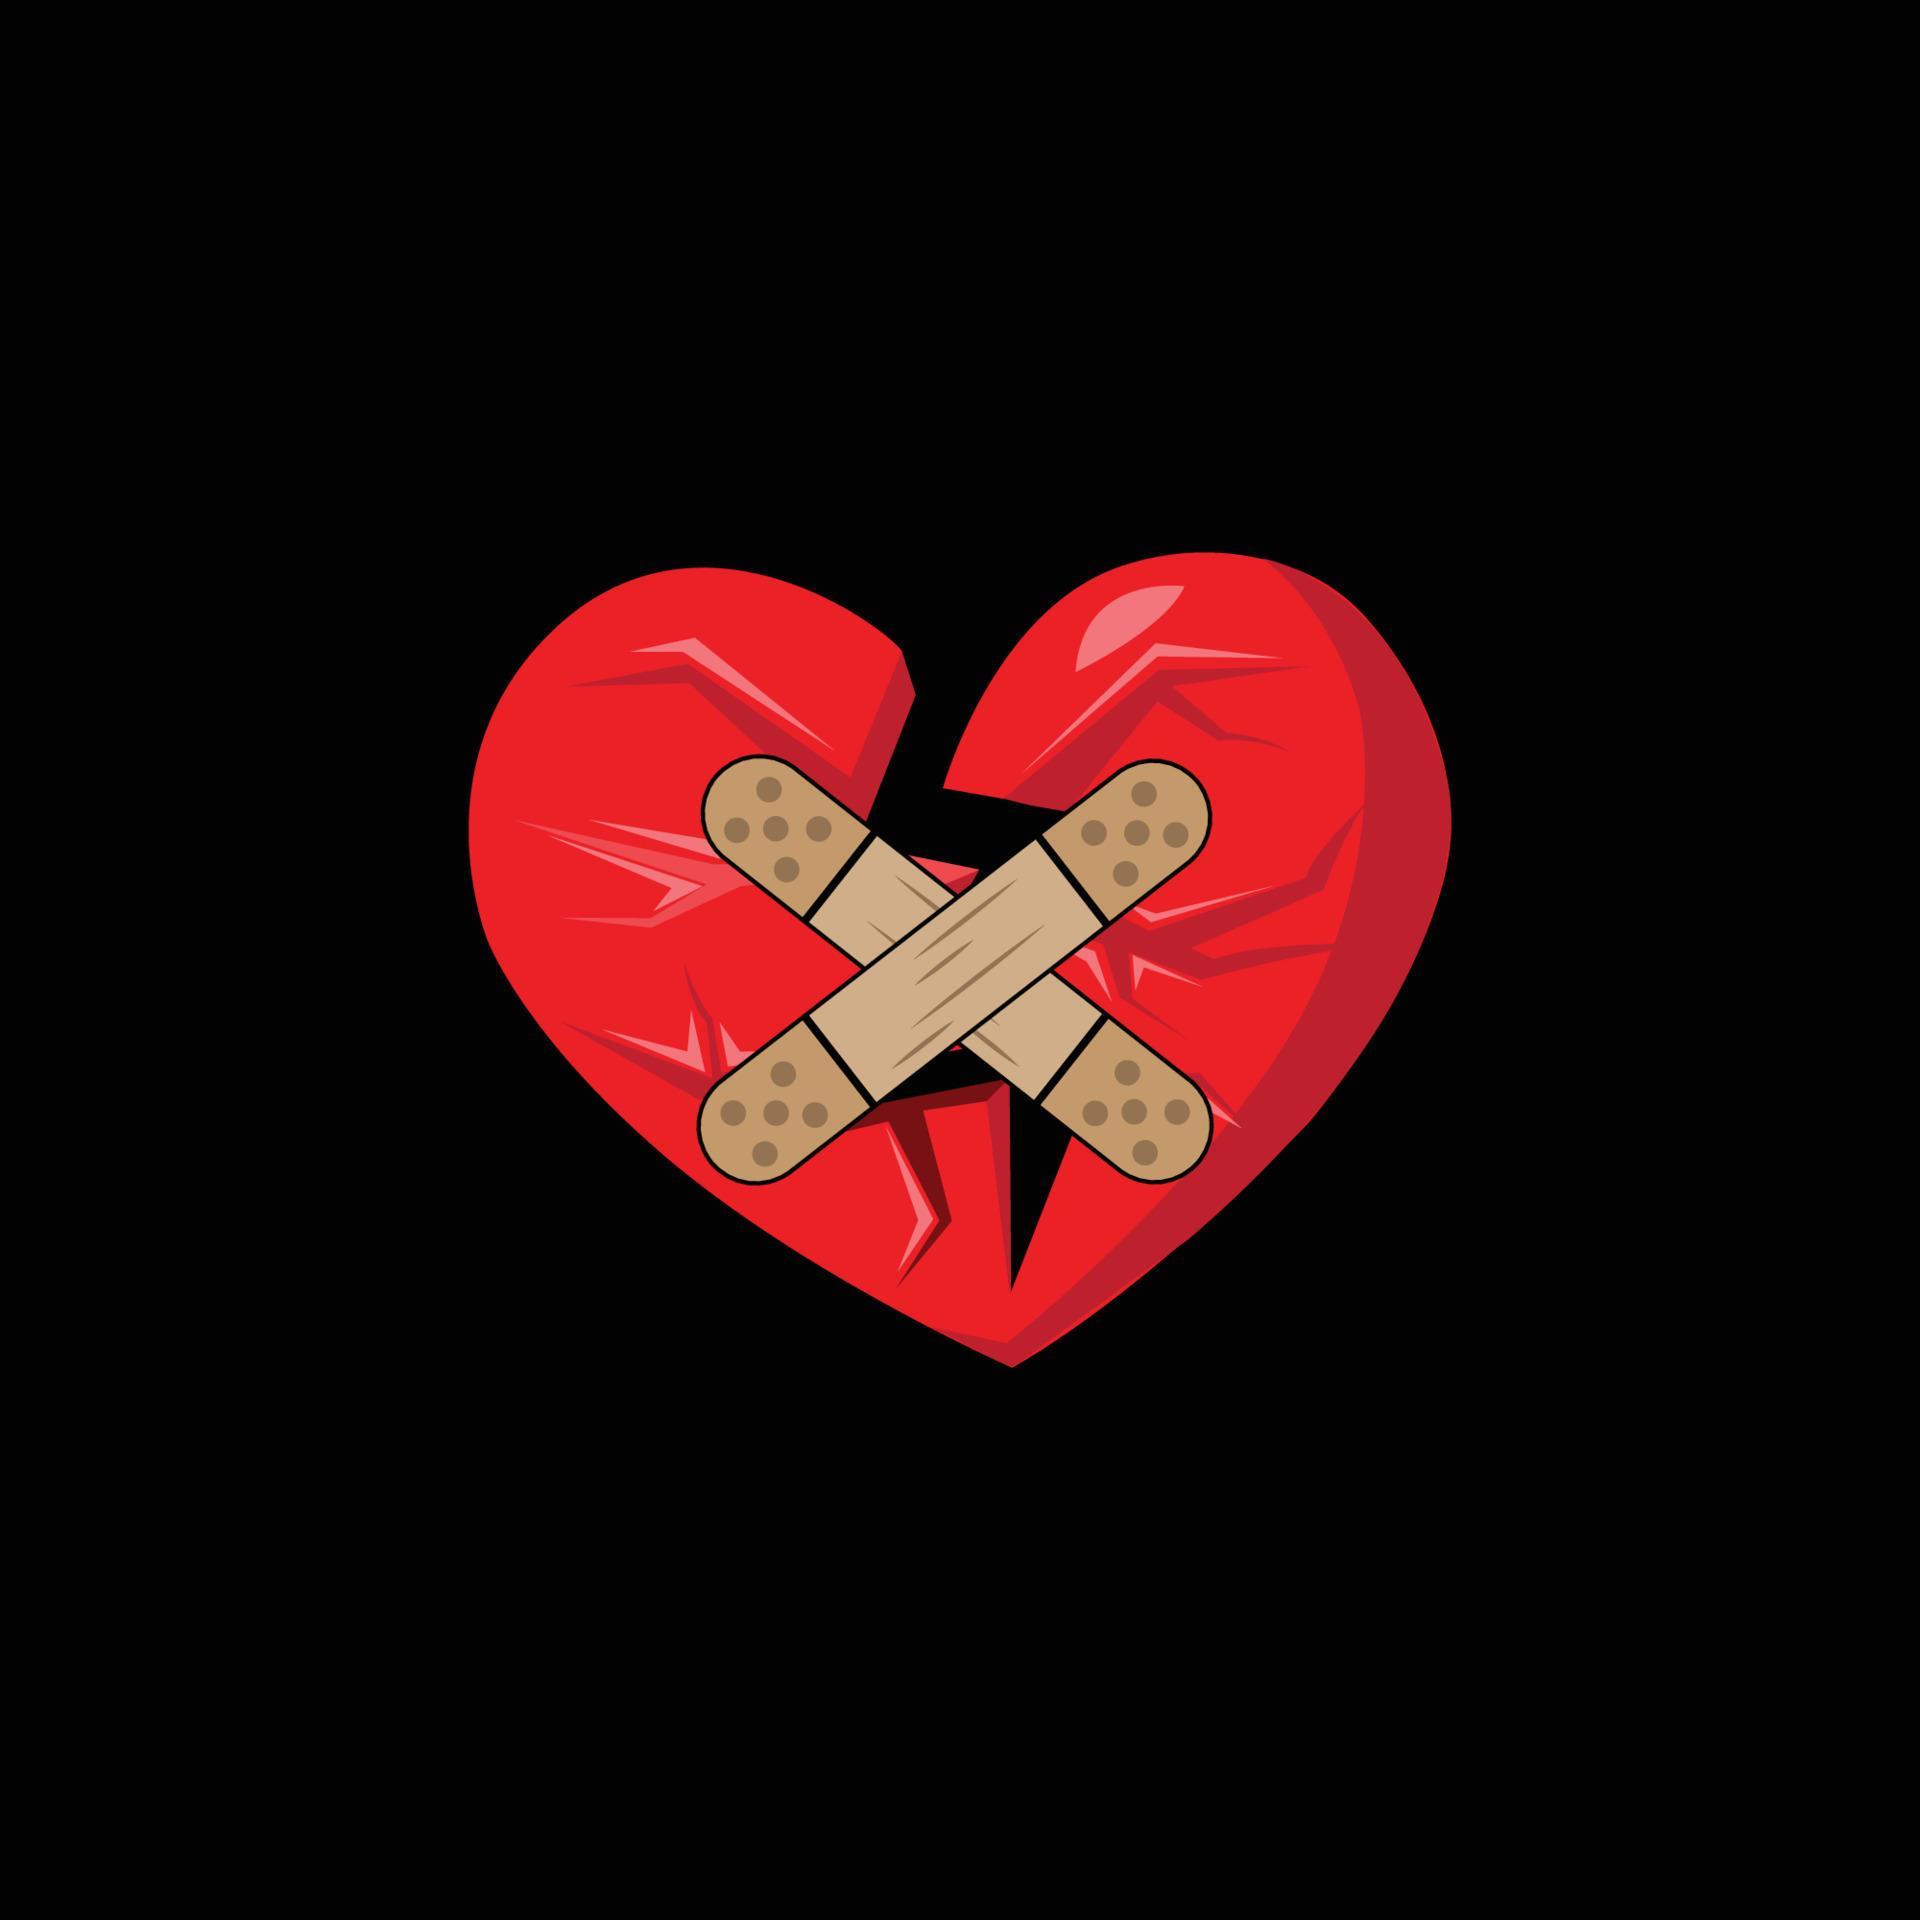 broken heart logo, hurt soul, lost love feeling 6863034 Vector Art at ...